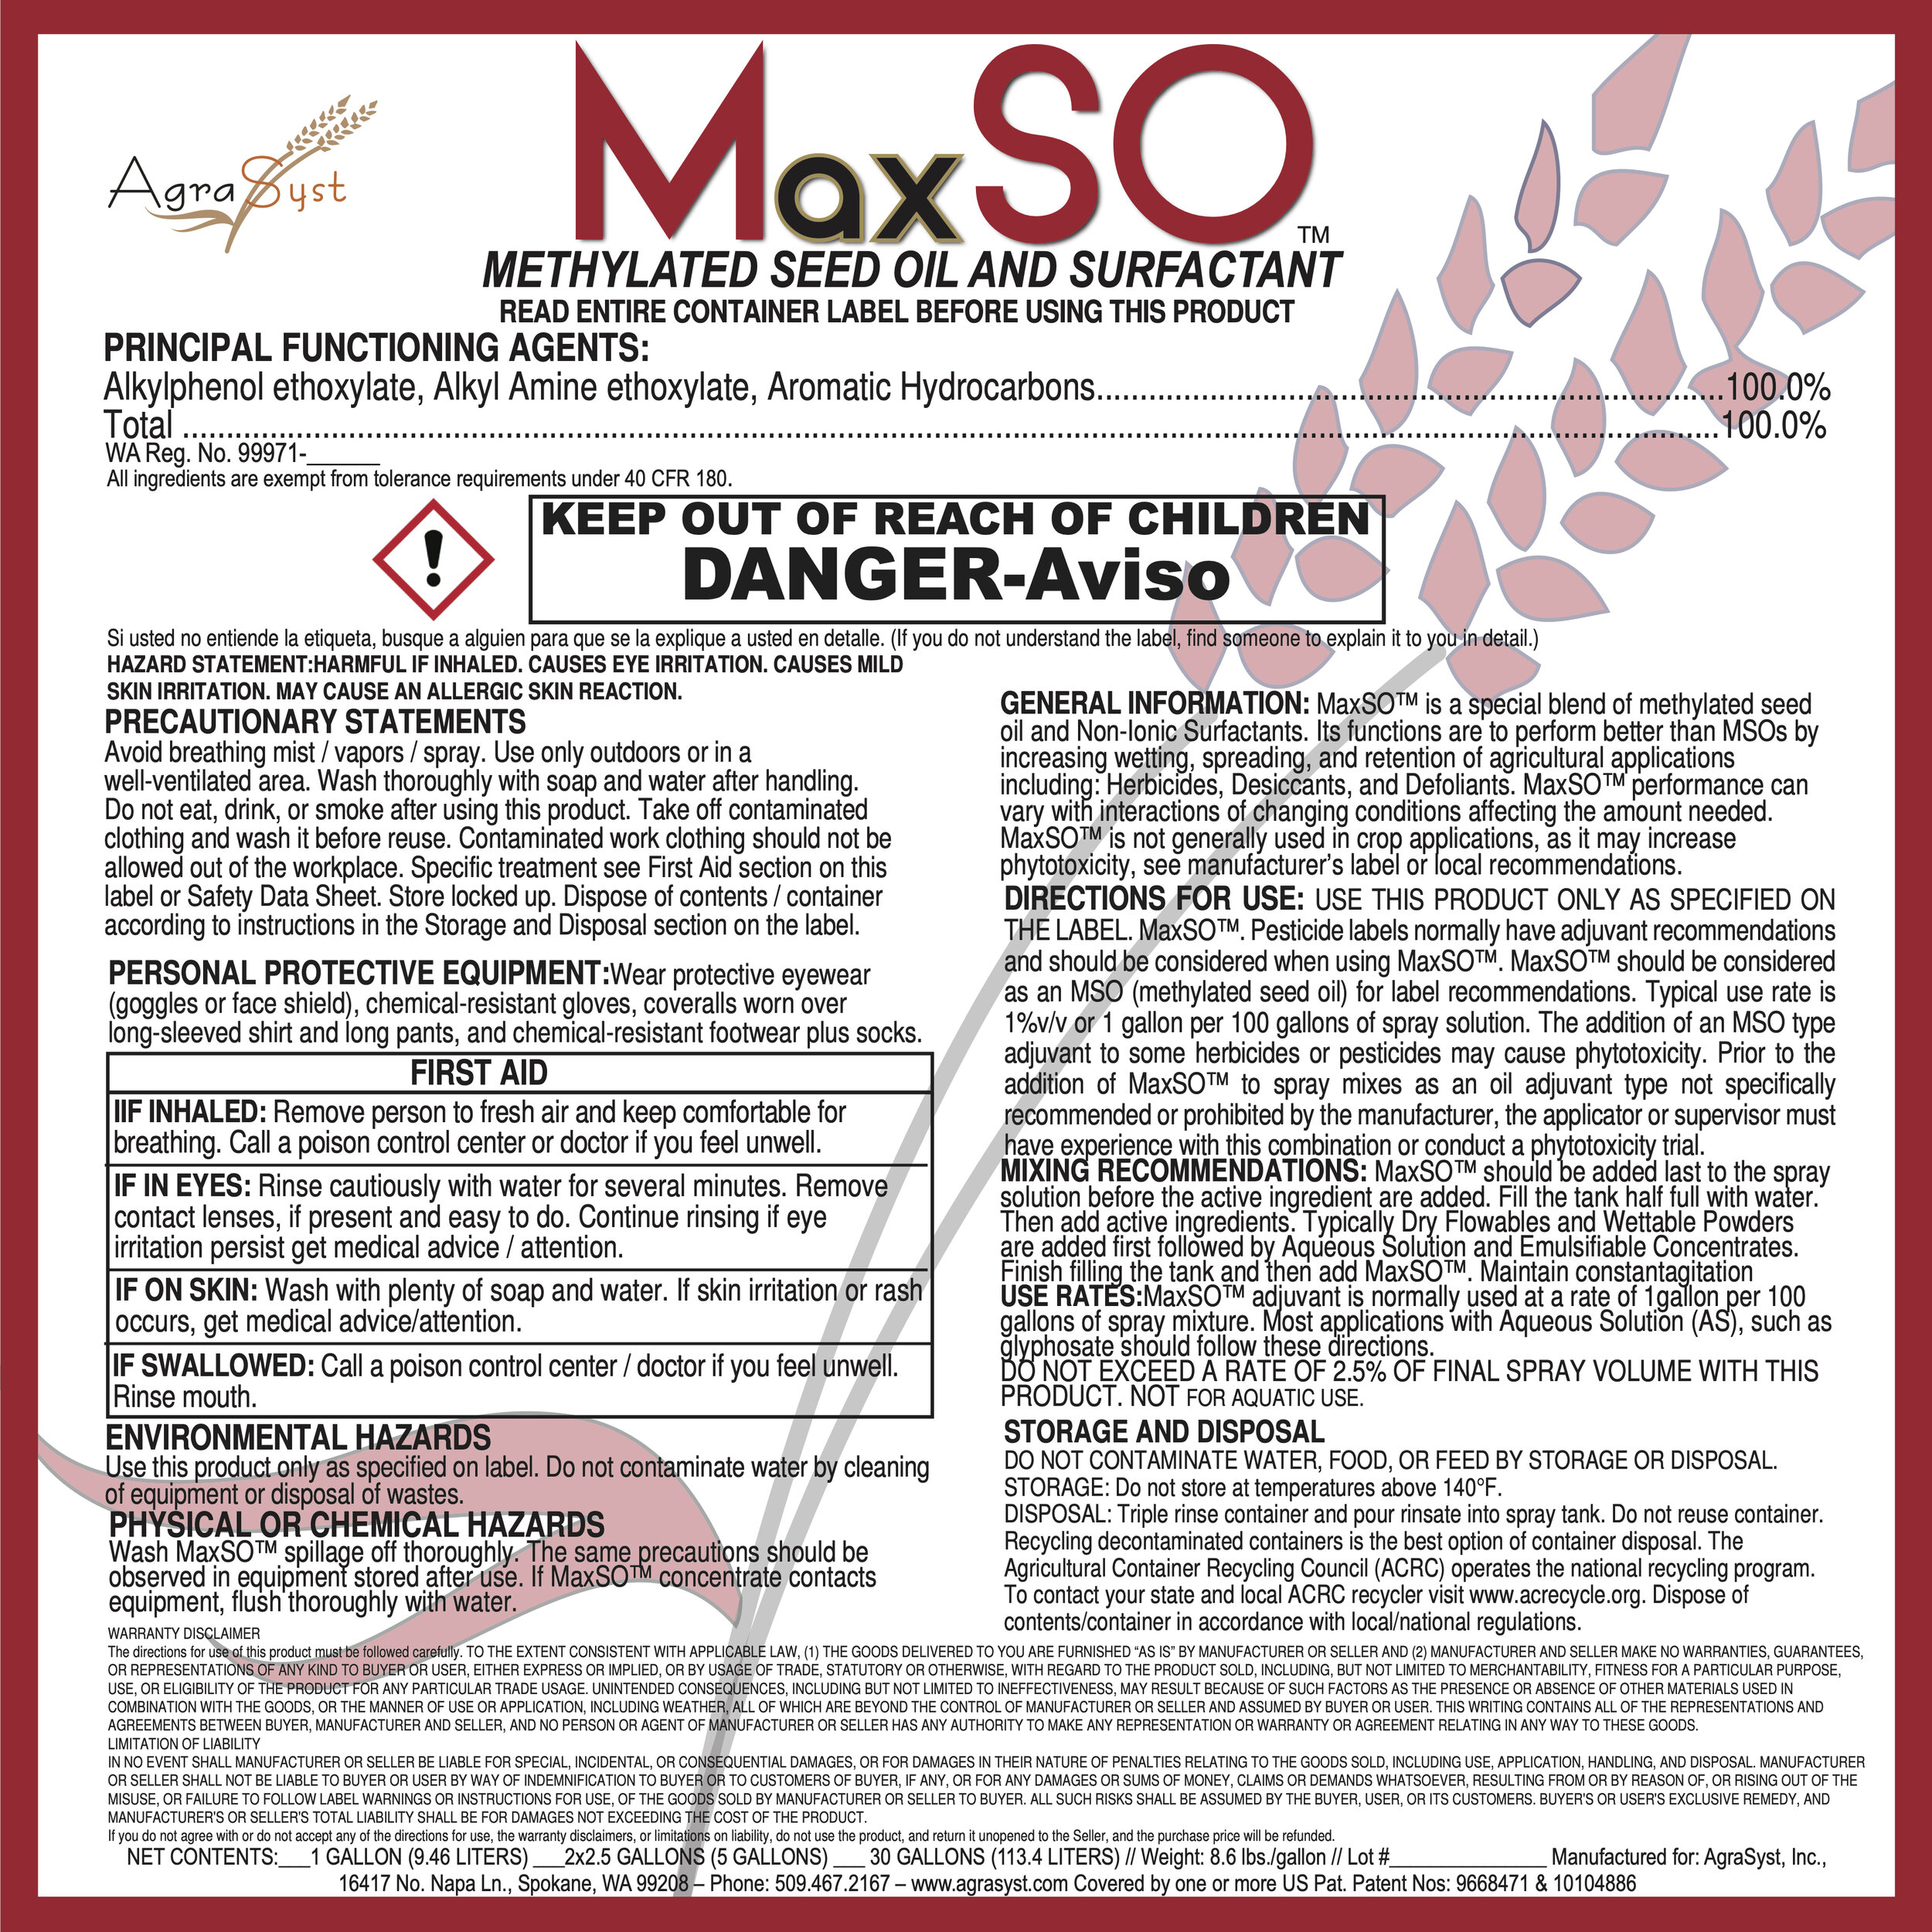 MaxSO label 4-24-19.jpg